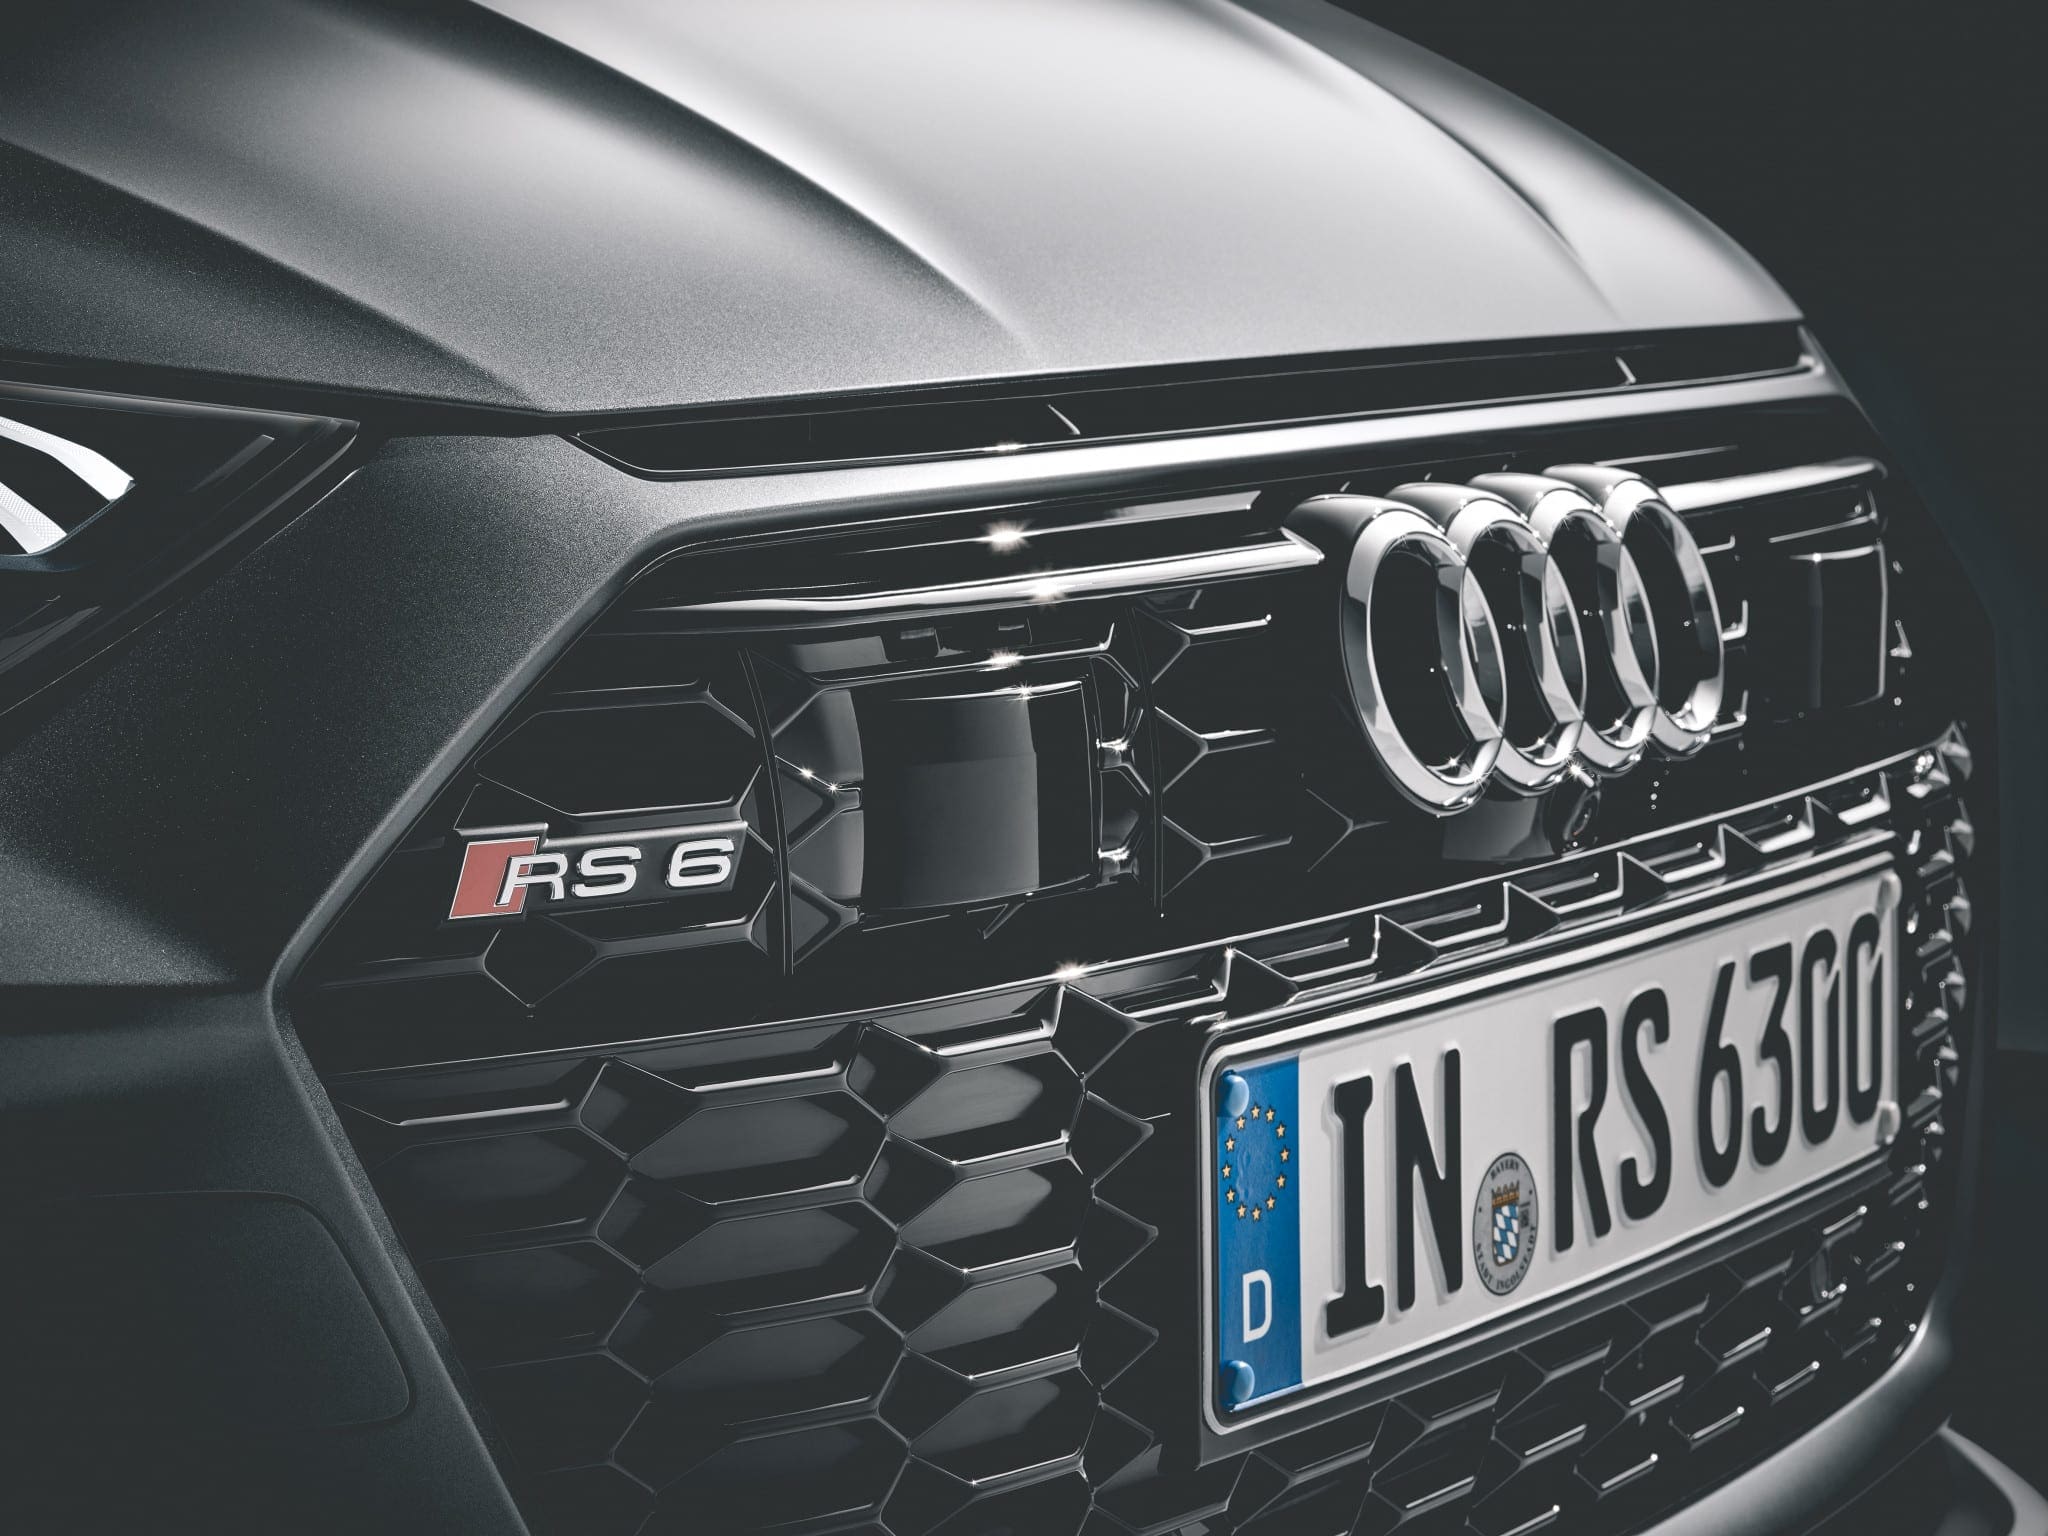 , Alles wat we weten over de nieuwe Audi RS6 Avant